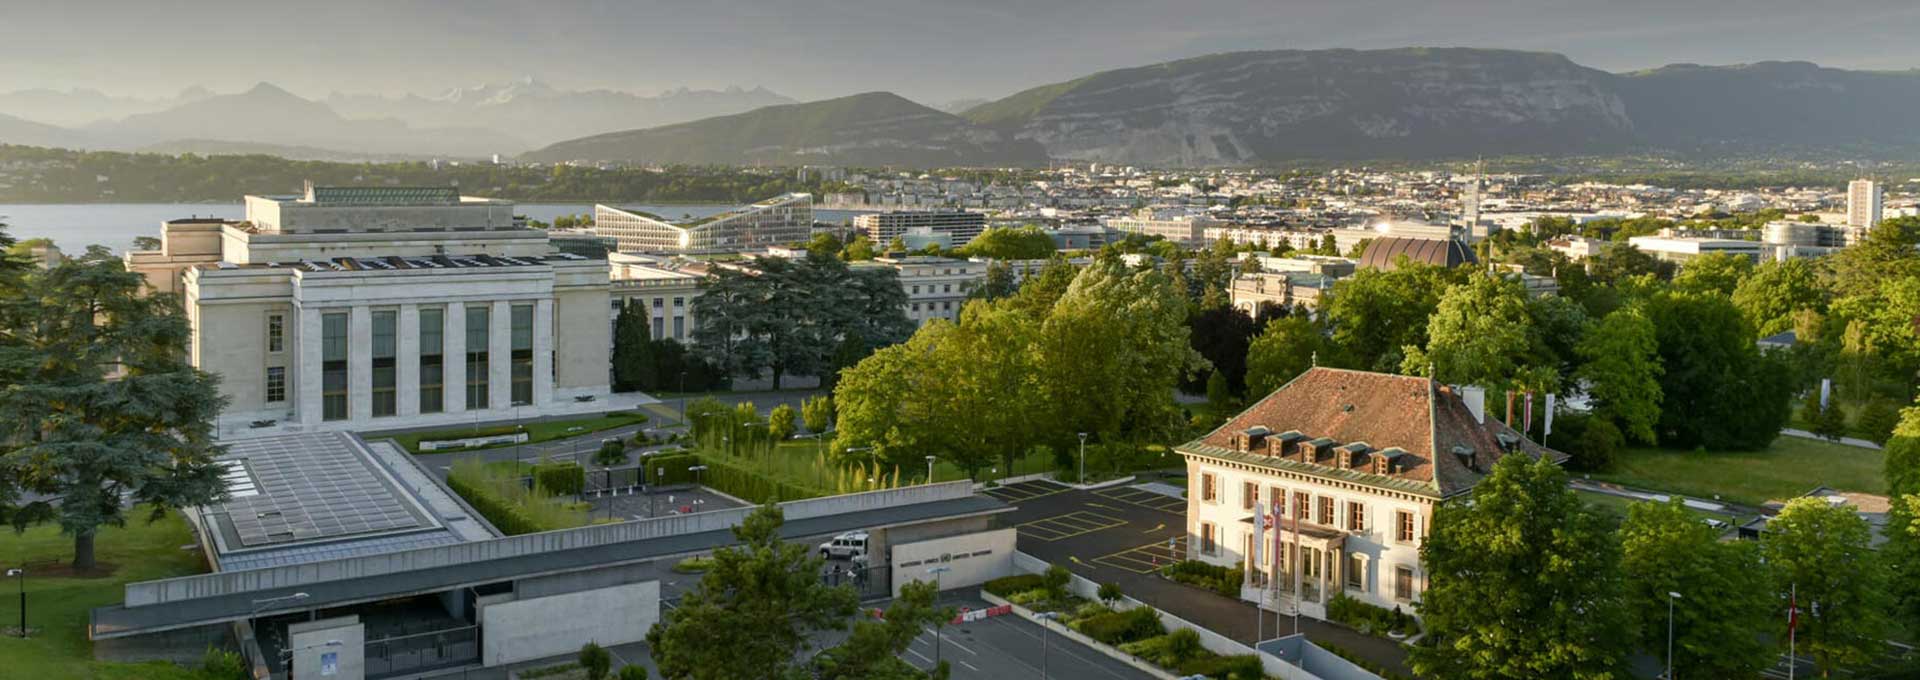 Hotelschool van Genève